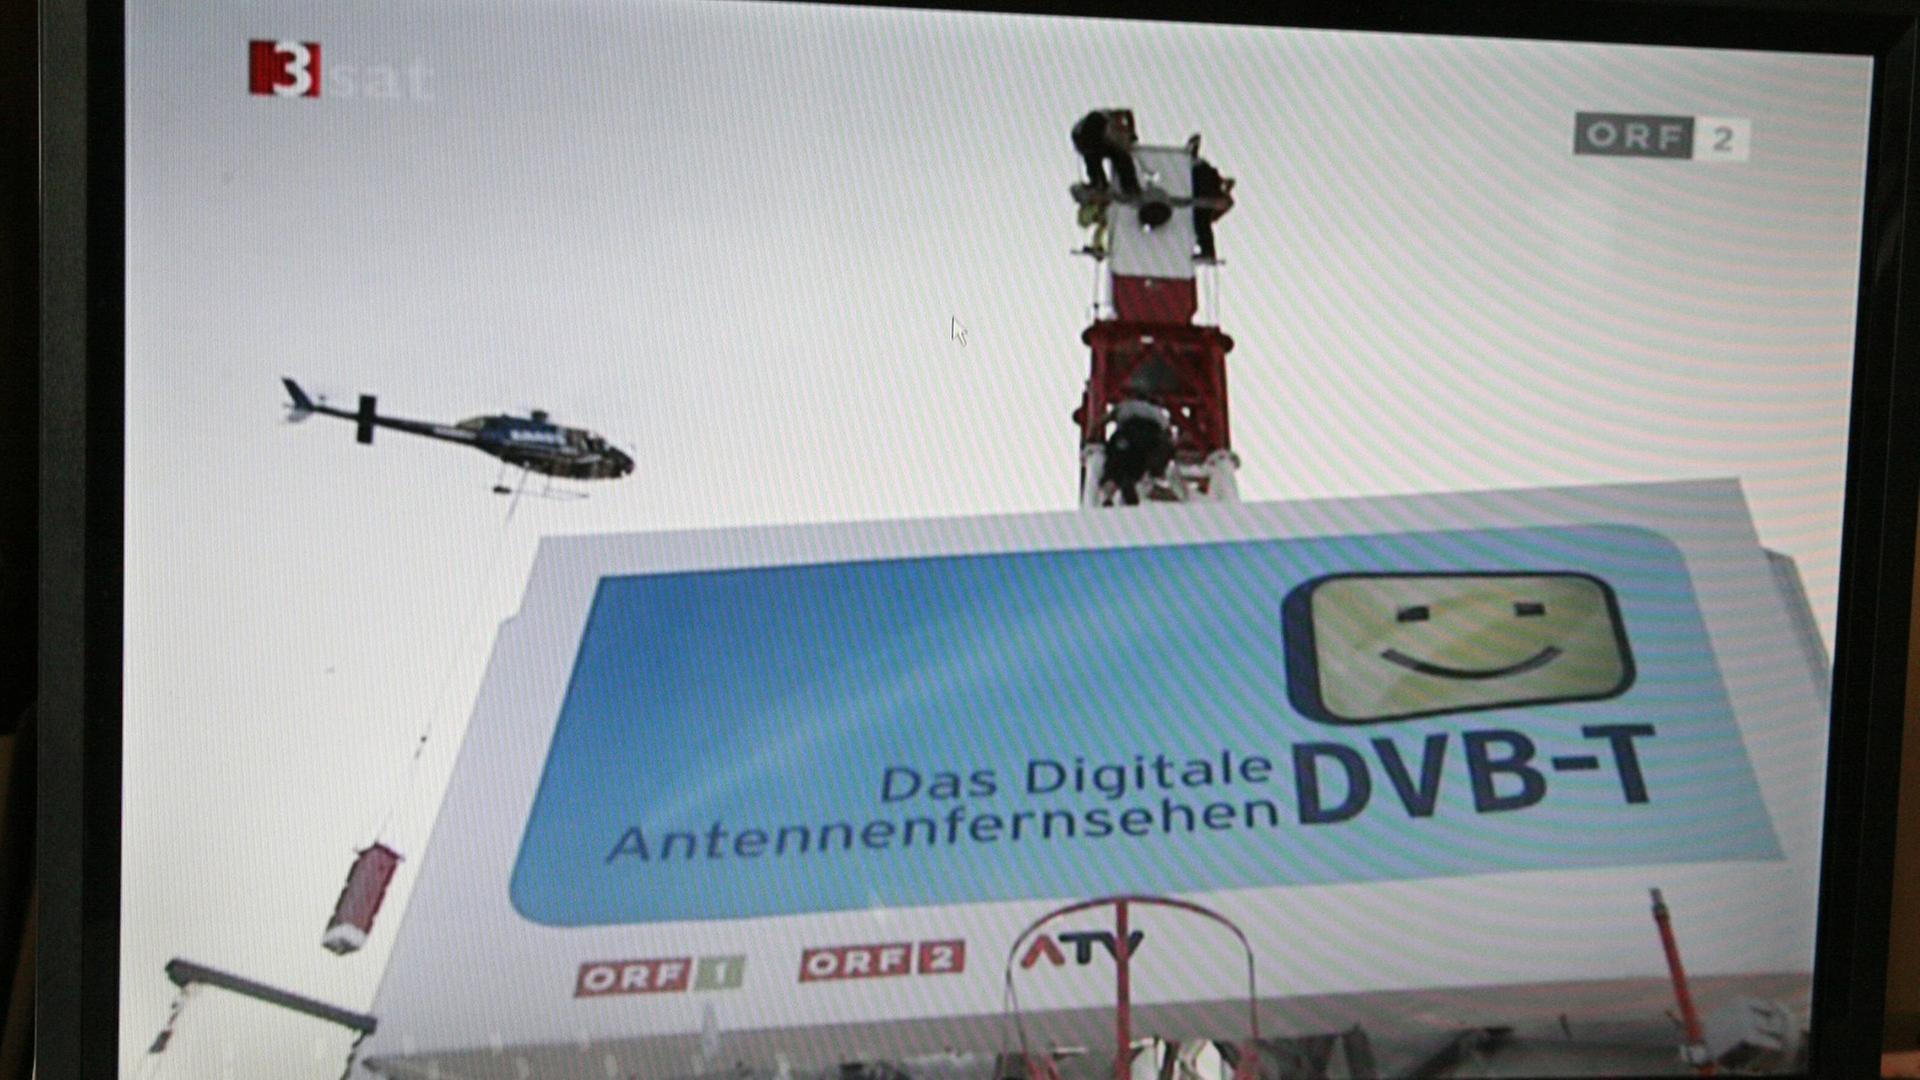 Das digitale Antennenfernsehen DVB-T